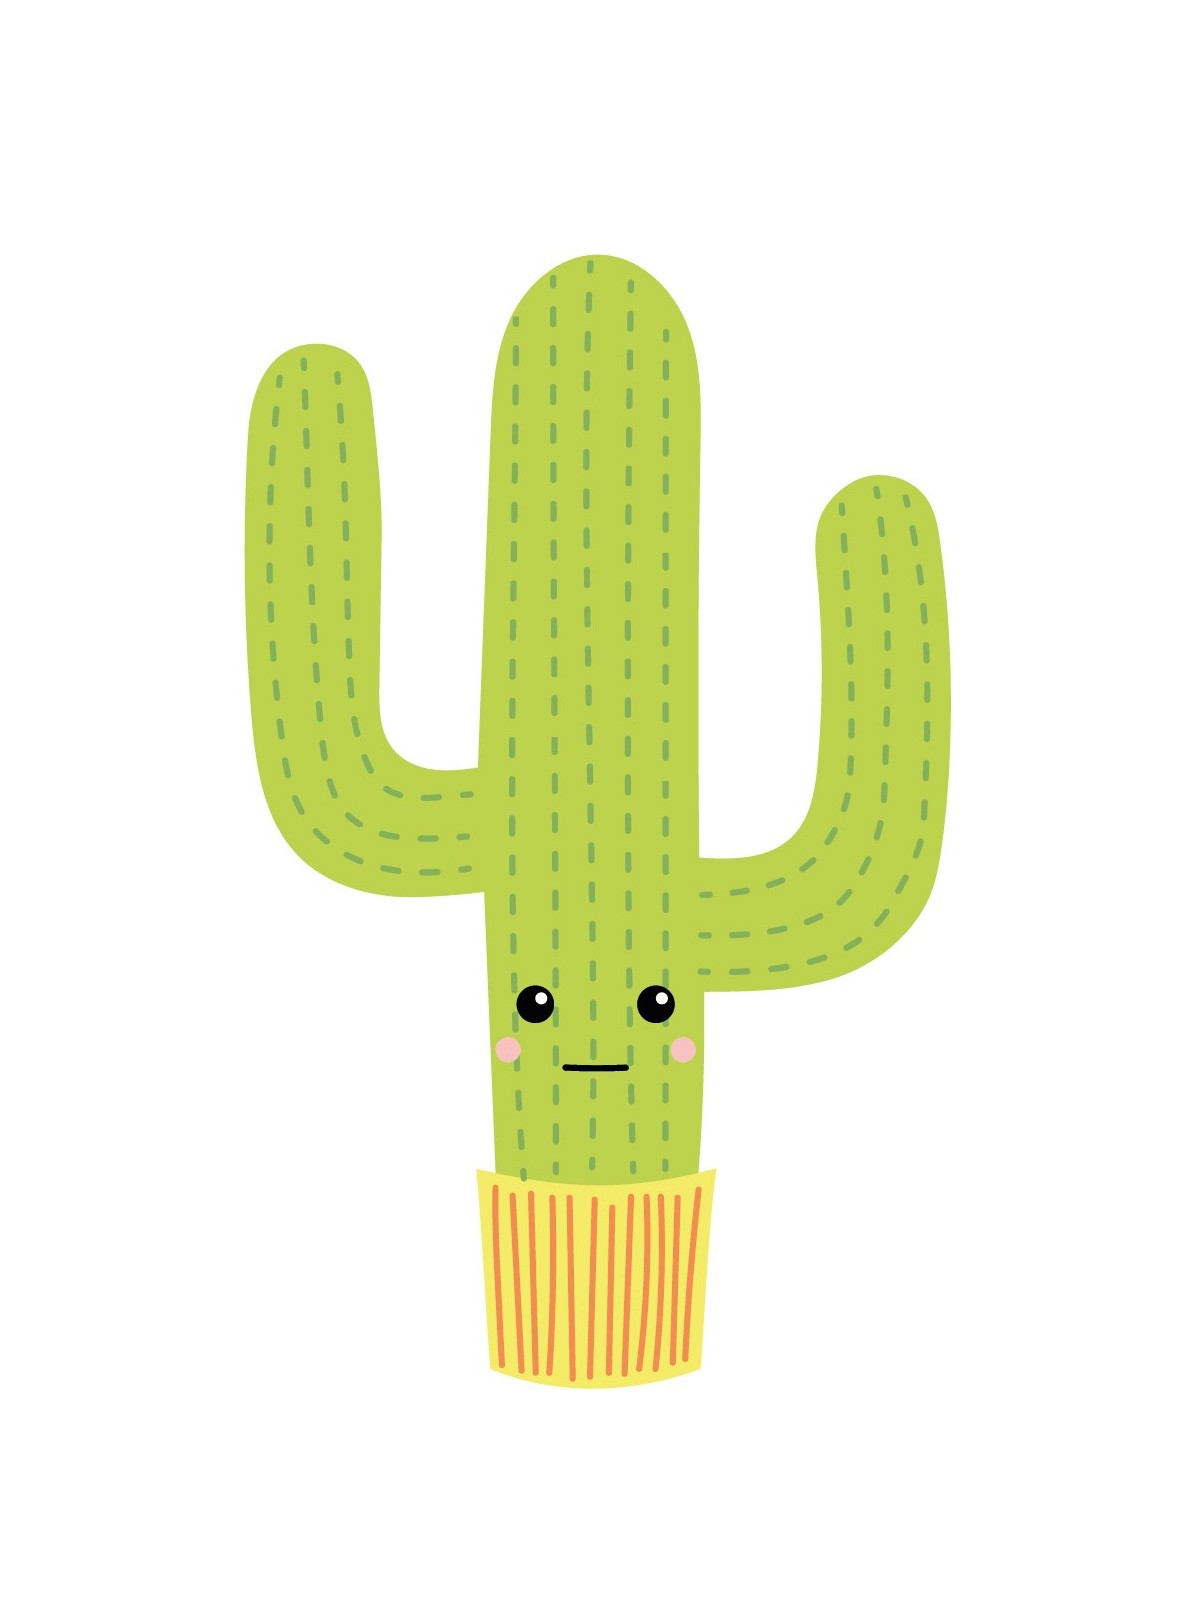 Stickers Autocollants enfant dÃ©co Cactus design ref 473